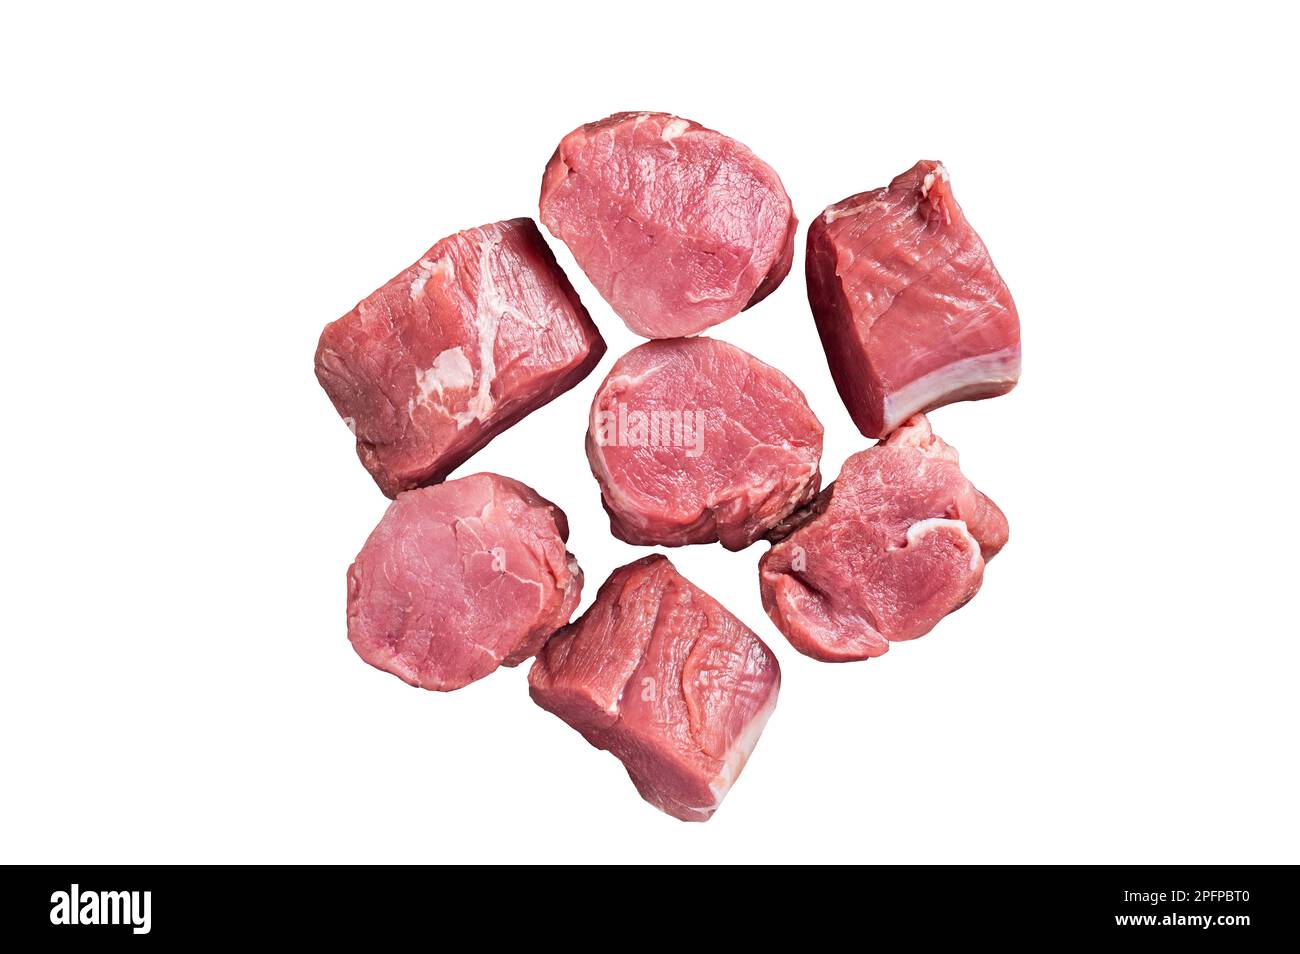 Medaglioni di filetto di maiale crudo. Isolato su sfondo bianco Foto Stock